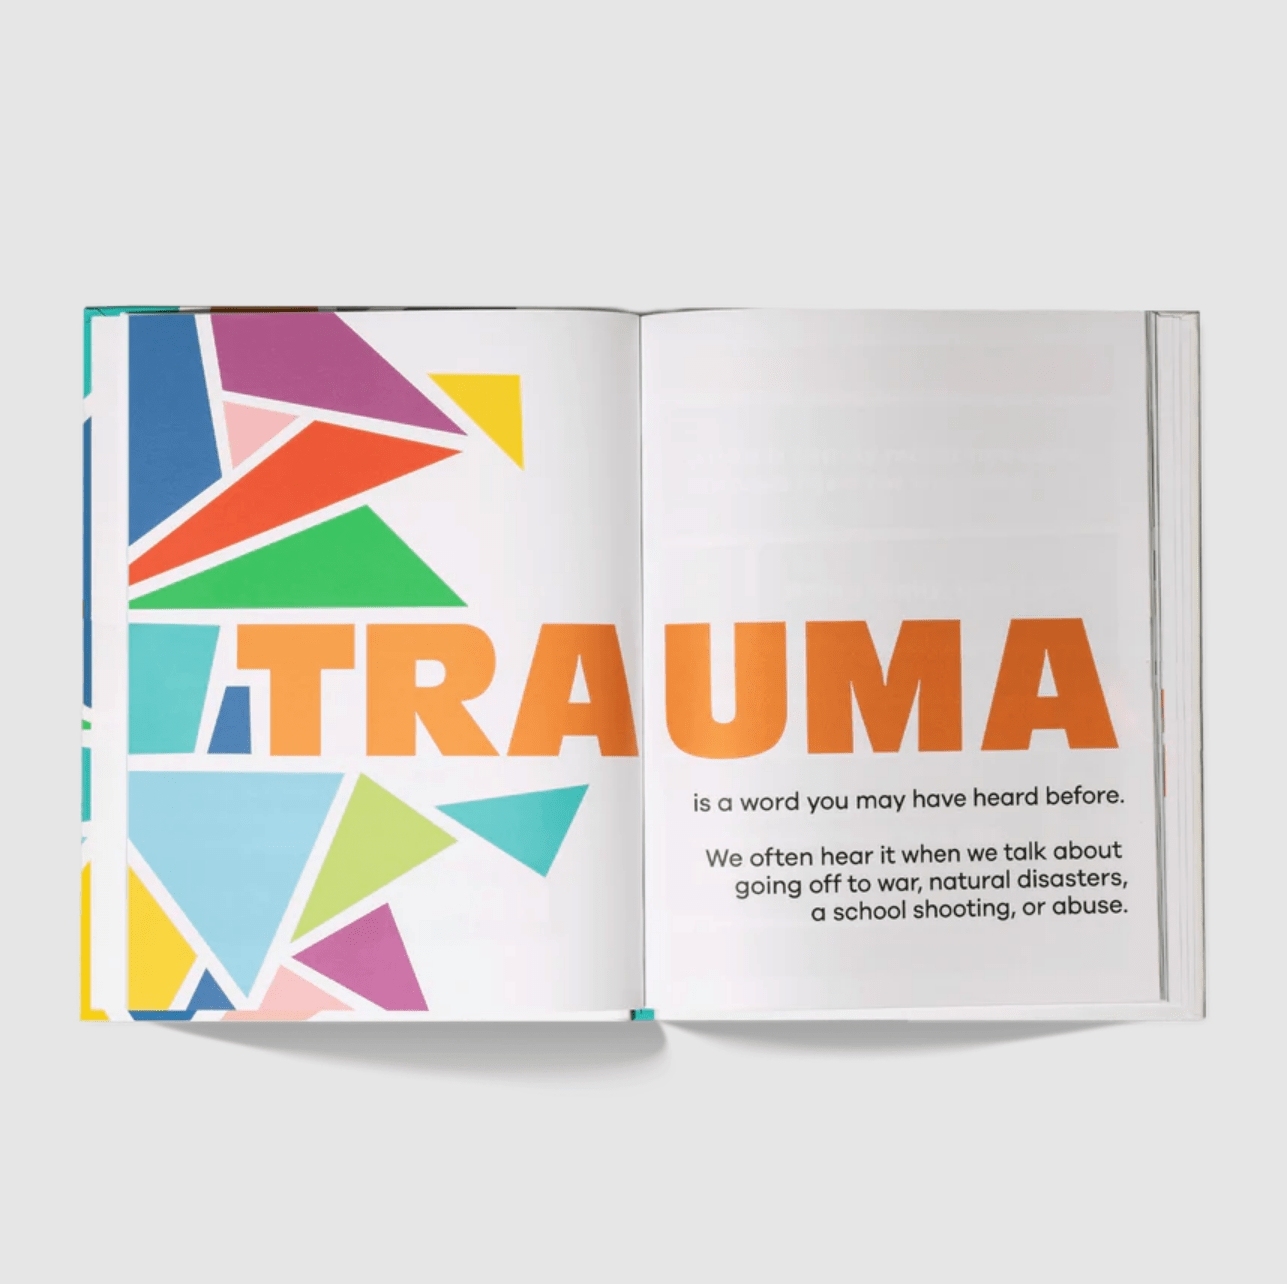 A Kids Co. Books A Kids Book About Trauma